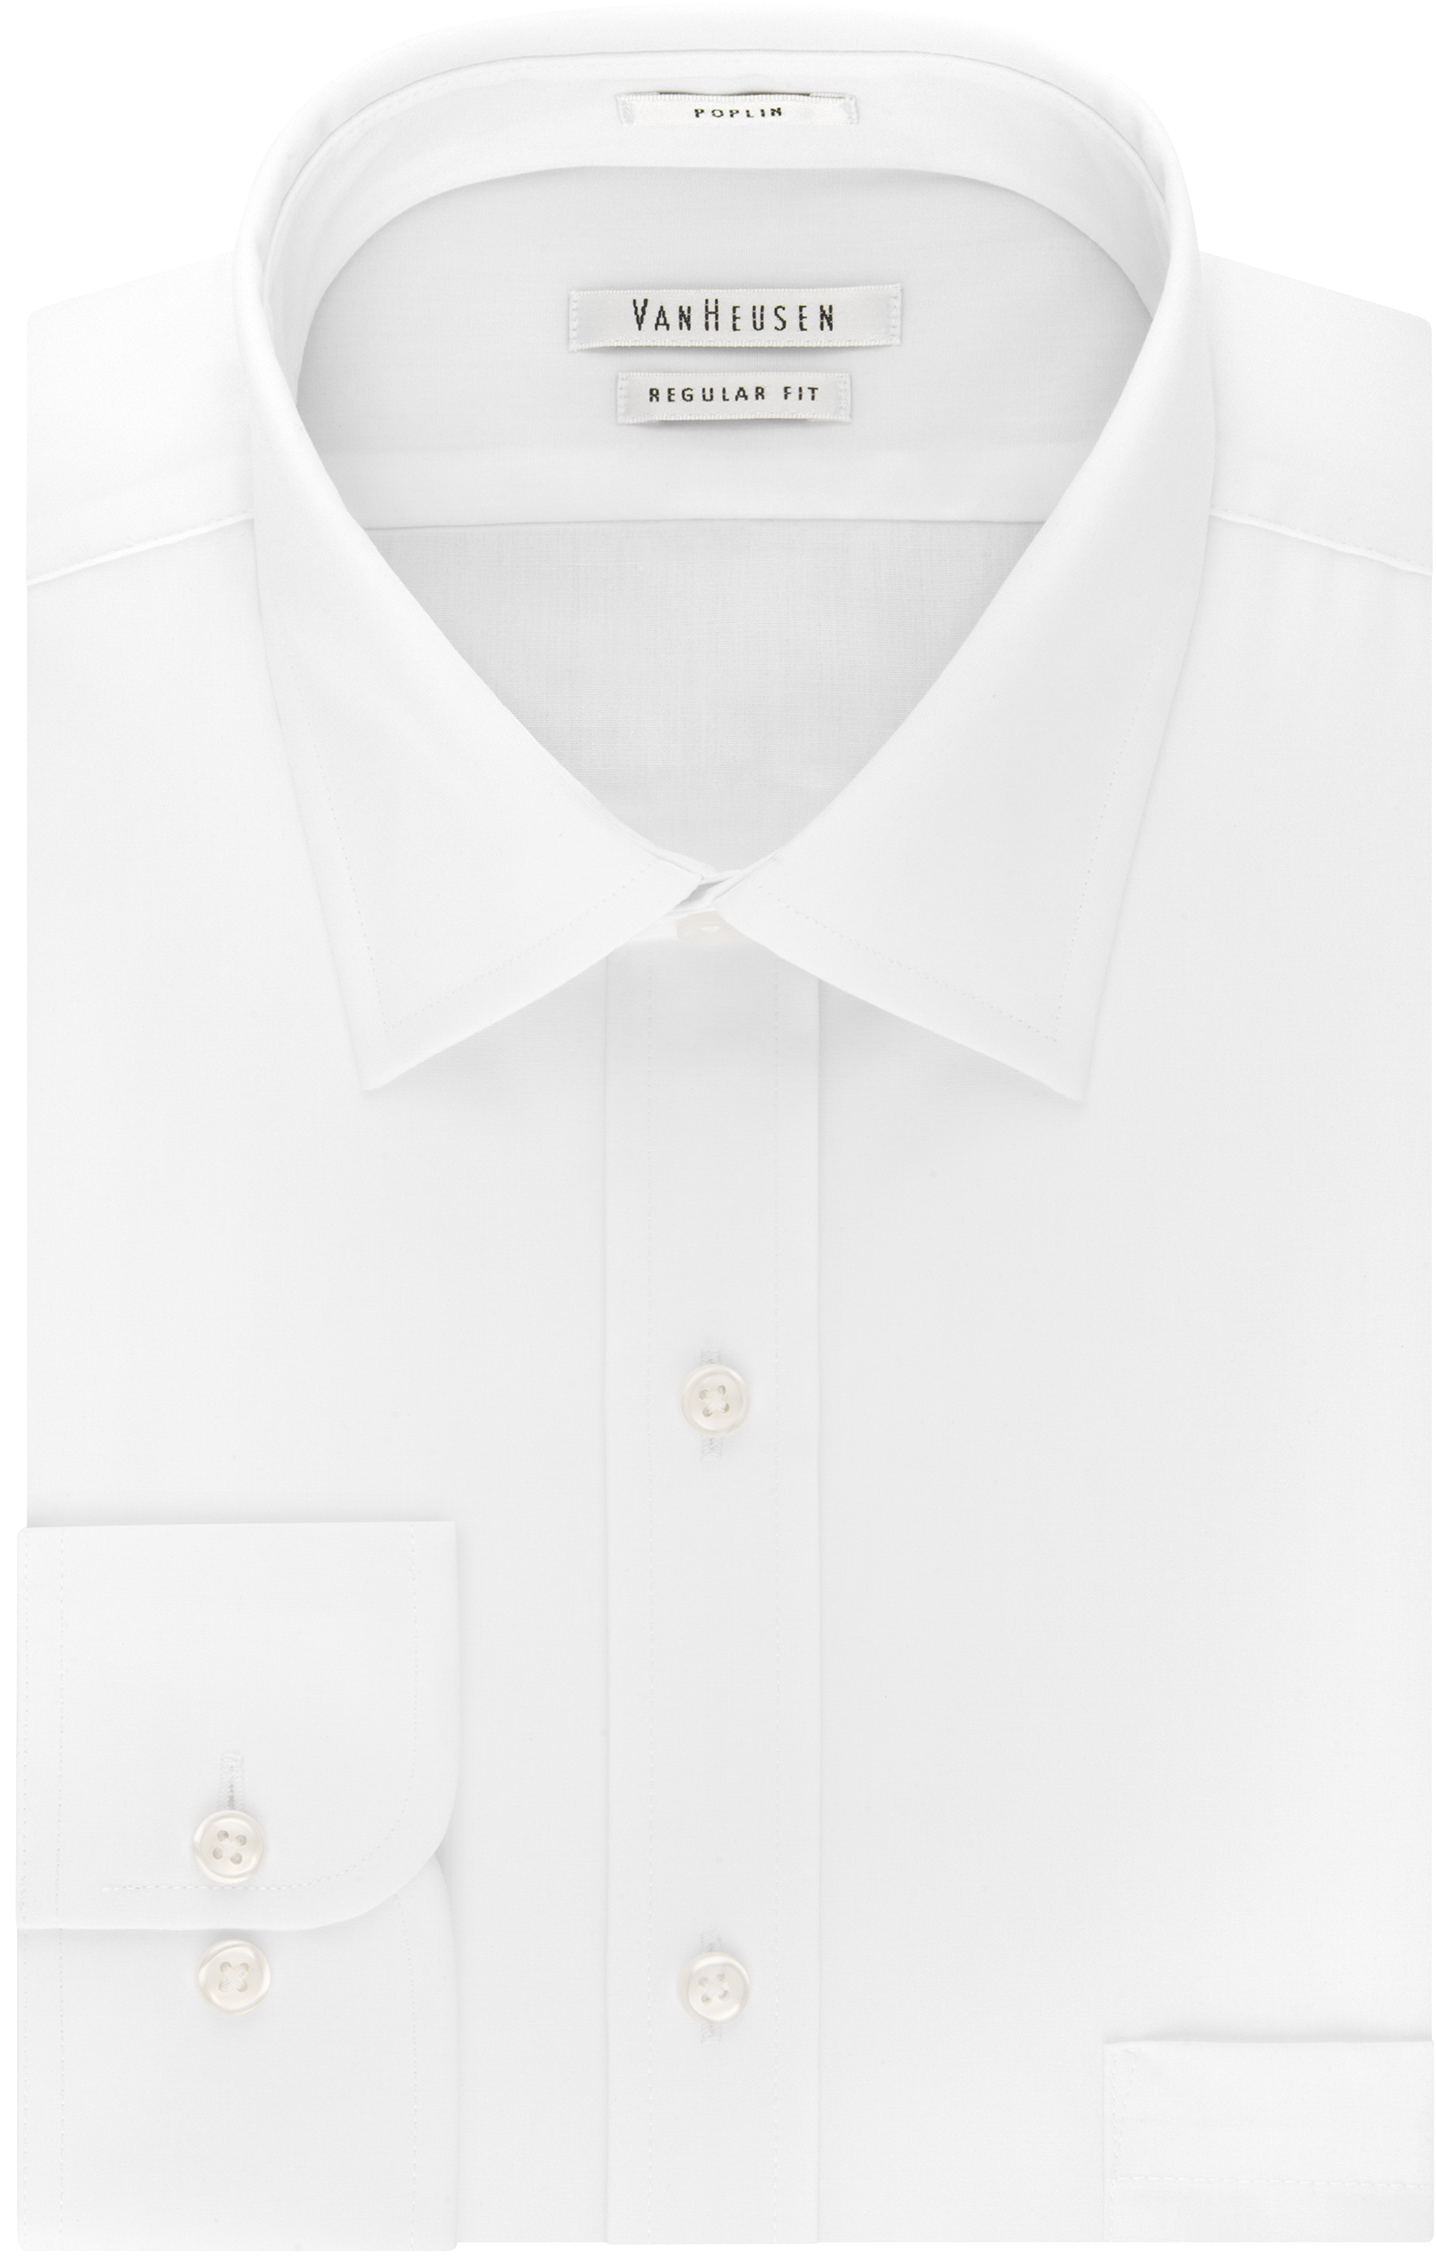 van heusen white formal shirts